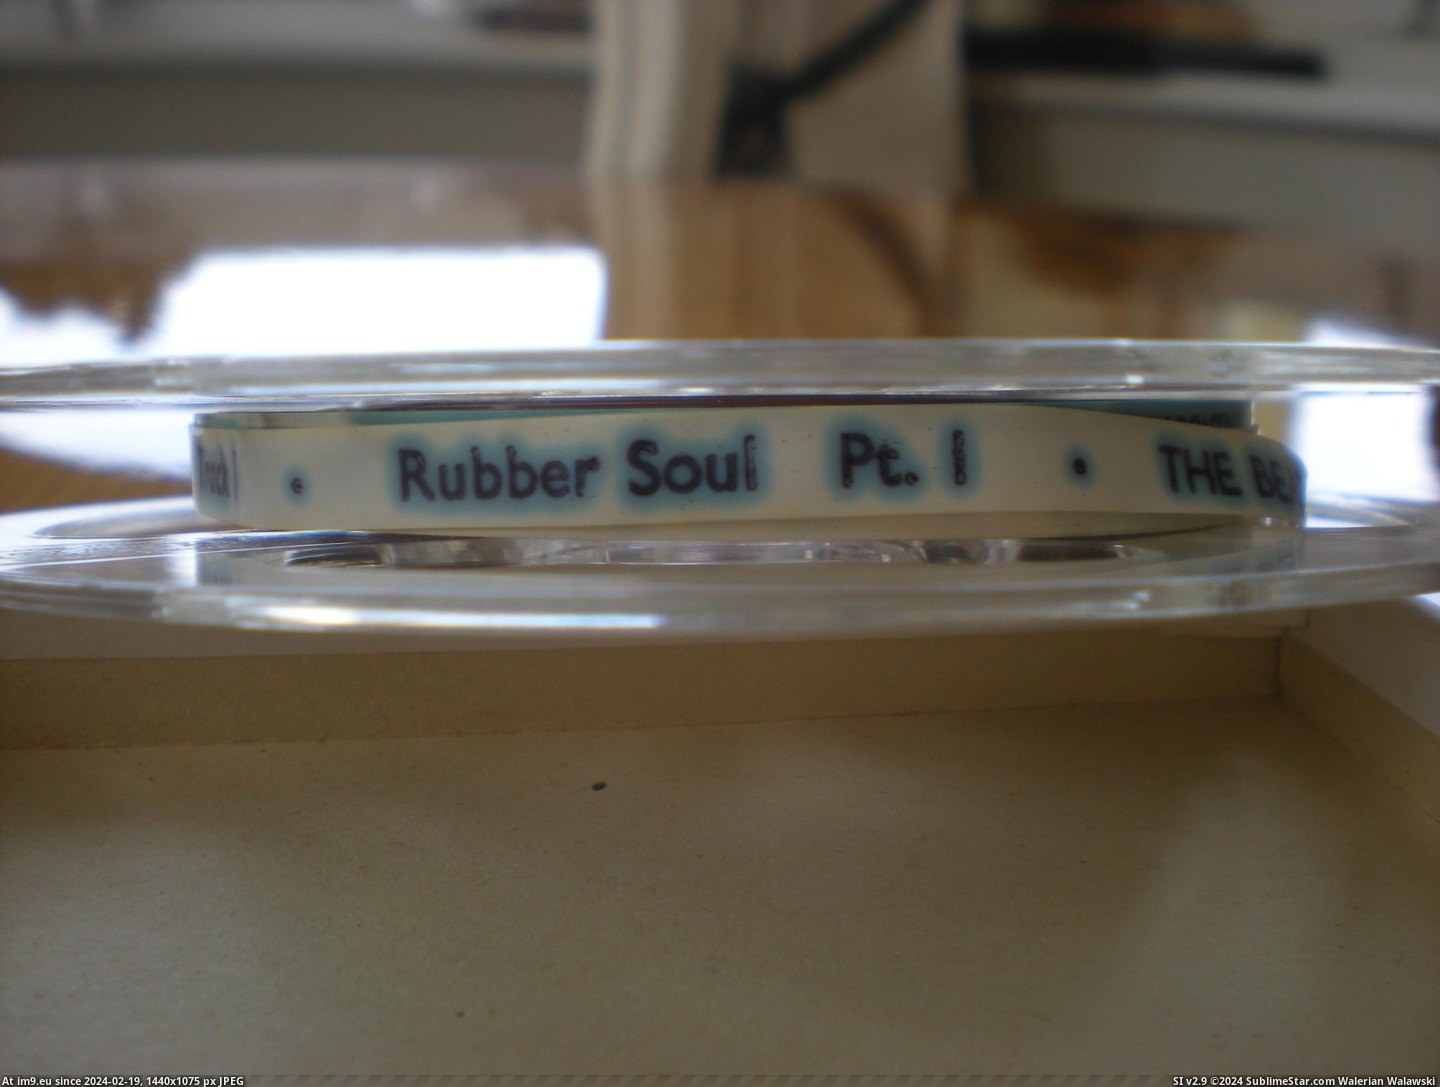 #Rubber #Soul #Reel Rubber Soul Reel 2 Pic. (Bild von album new 1))